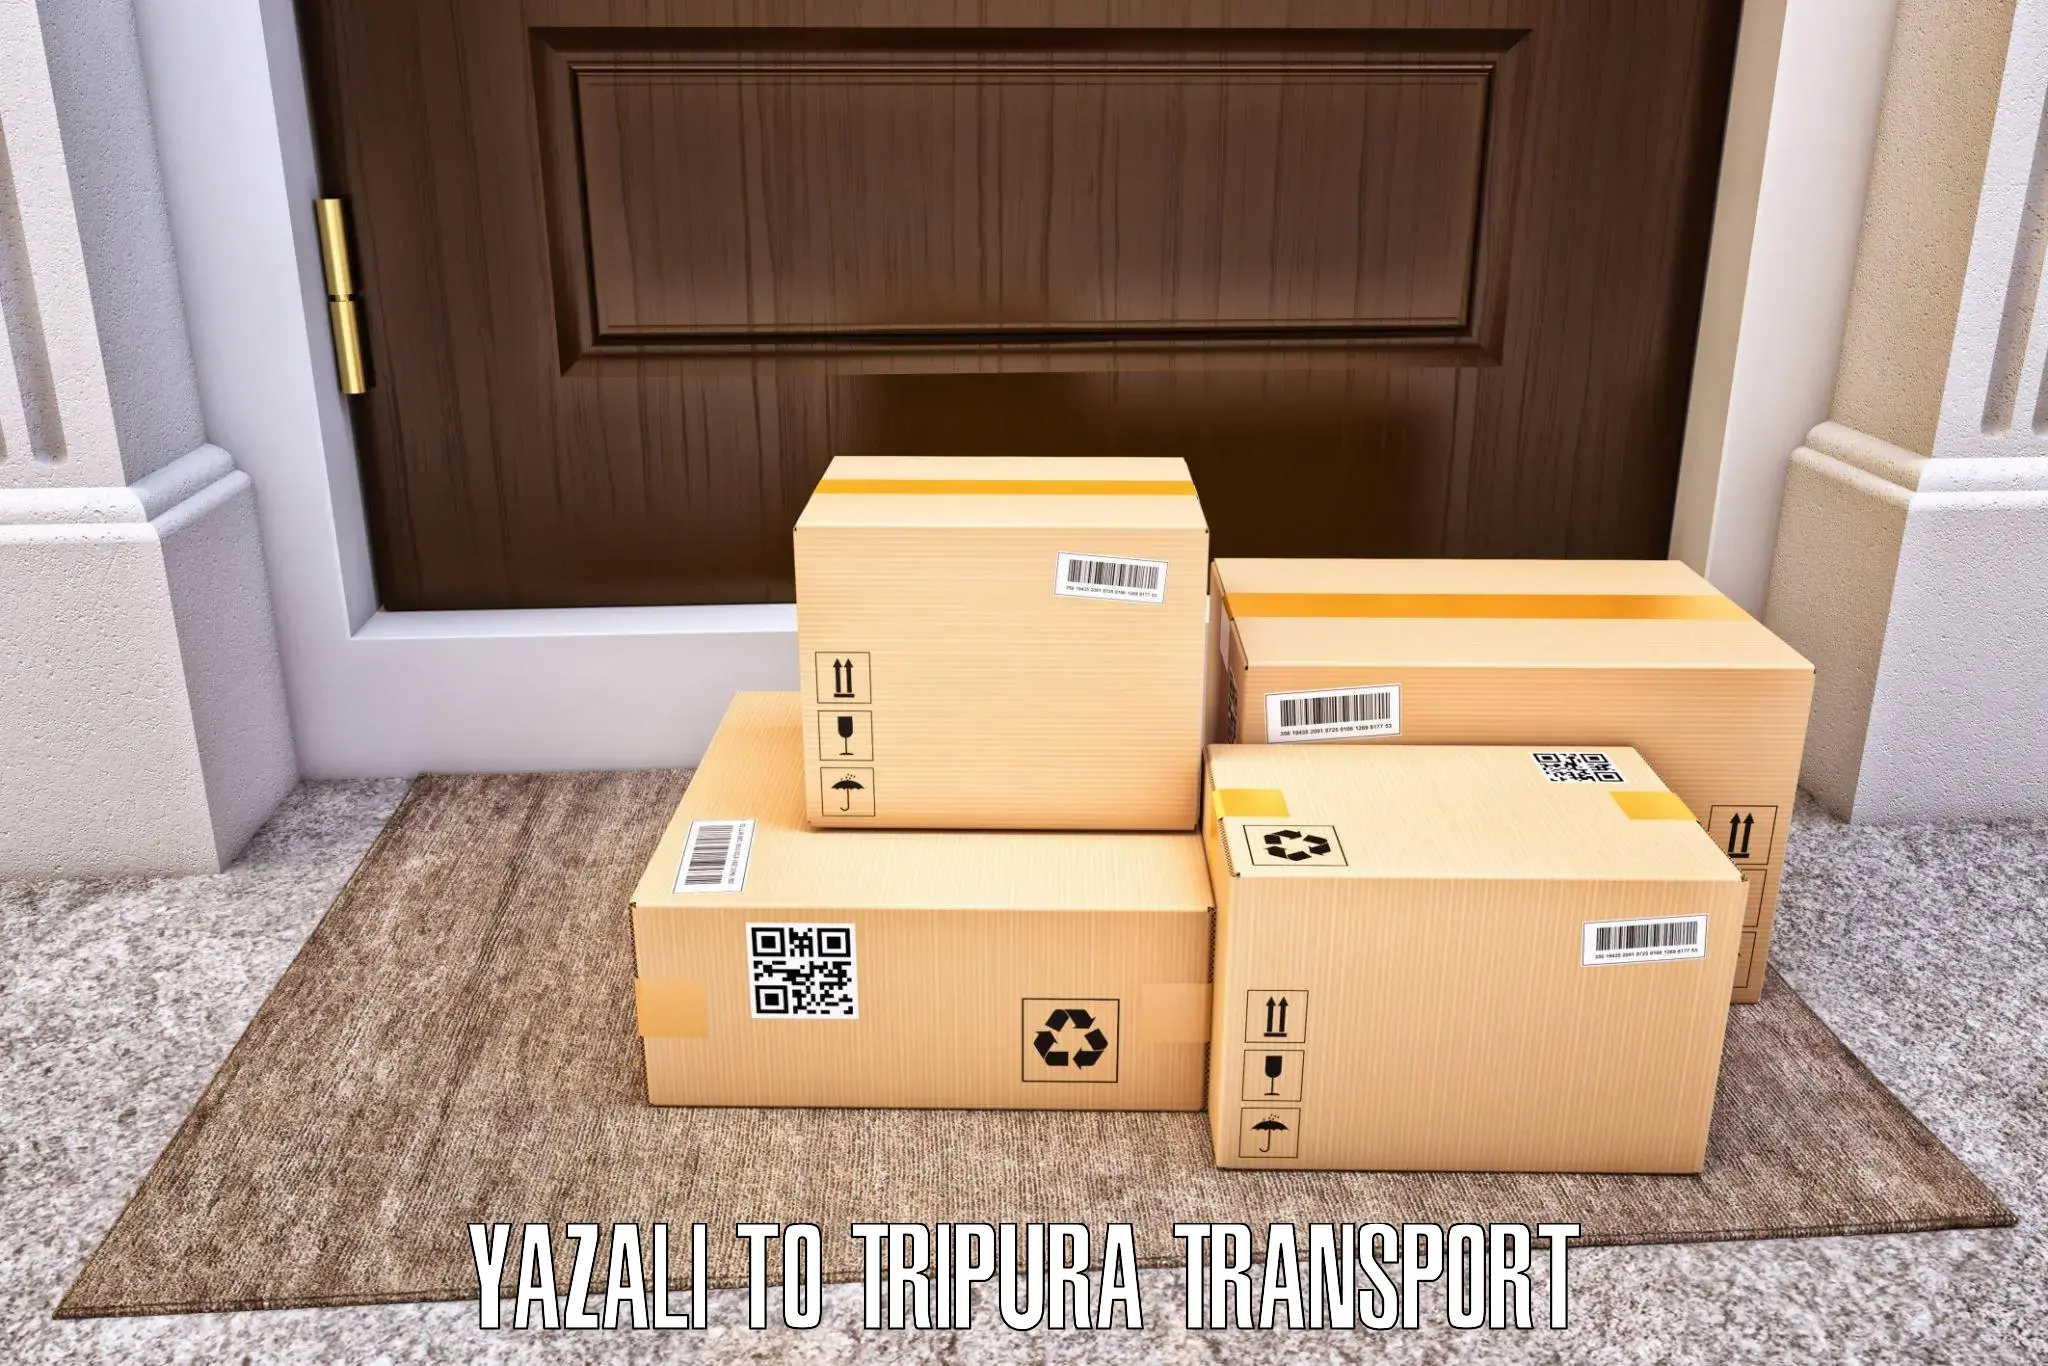 Interstate transport services Yazali to North Tripura